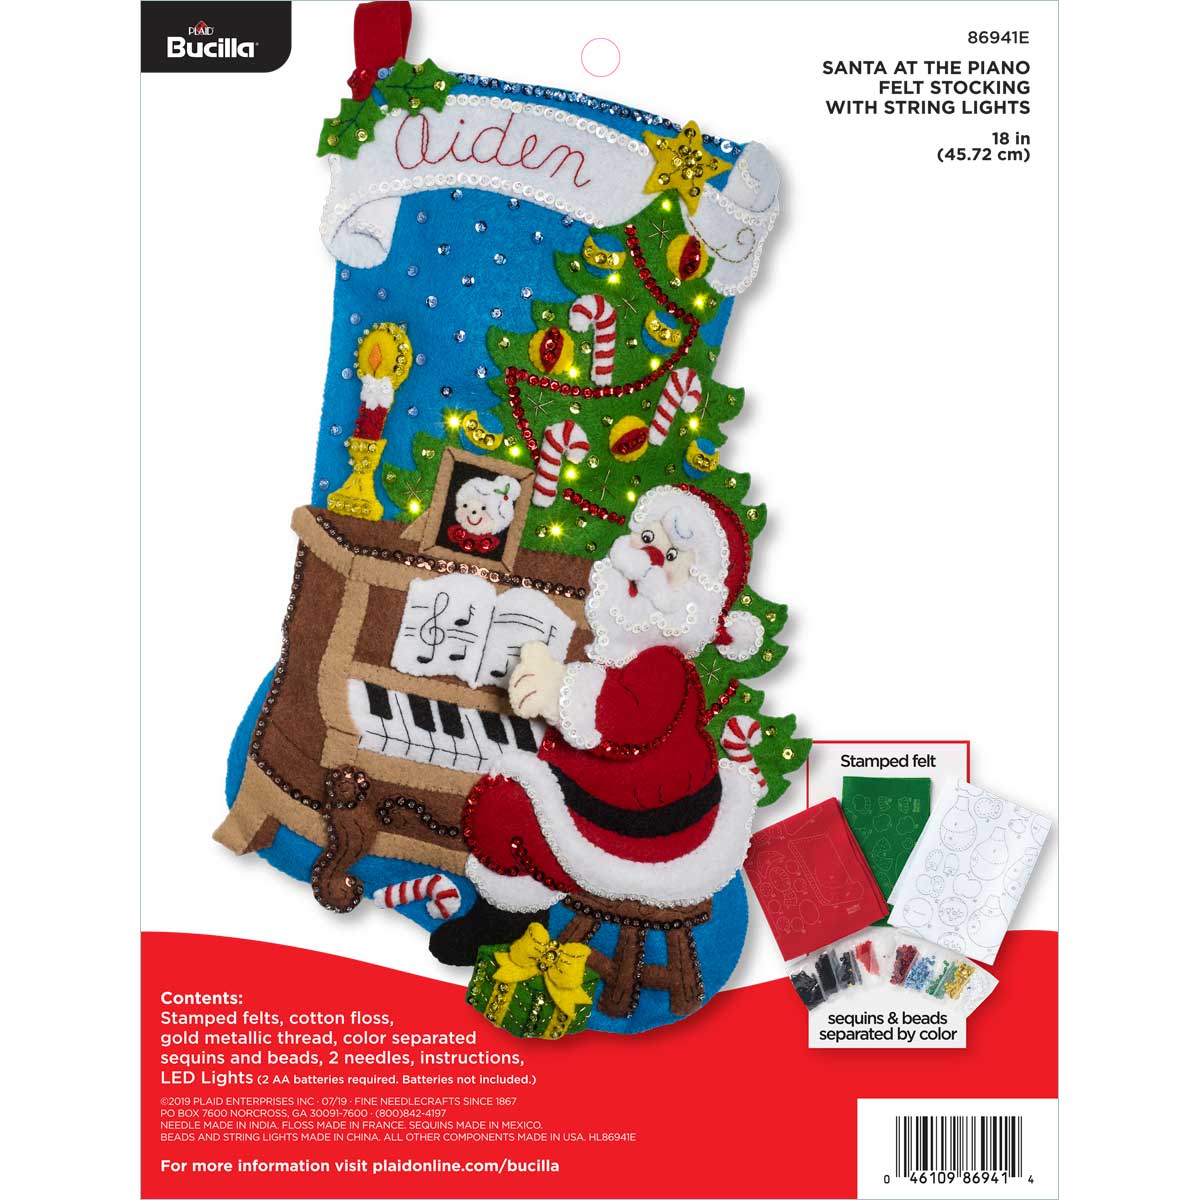 Bucilla ® Seasonal - Felt - Stocking Kits - Santa at the Piano with Lights - 86941E